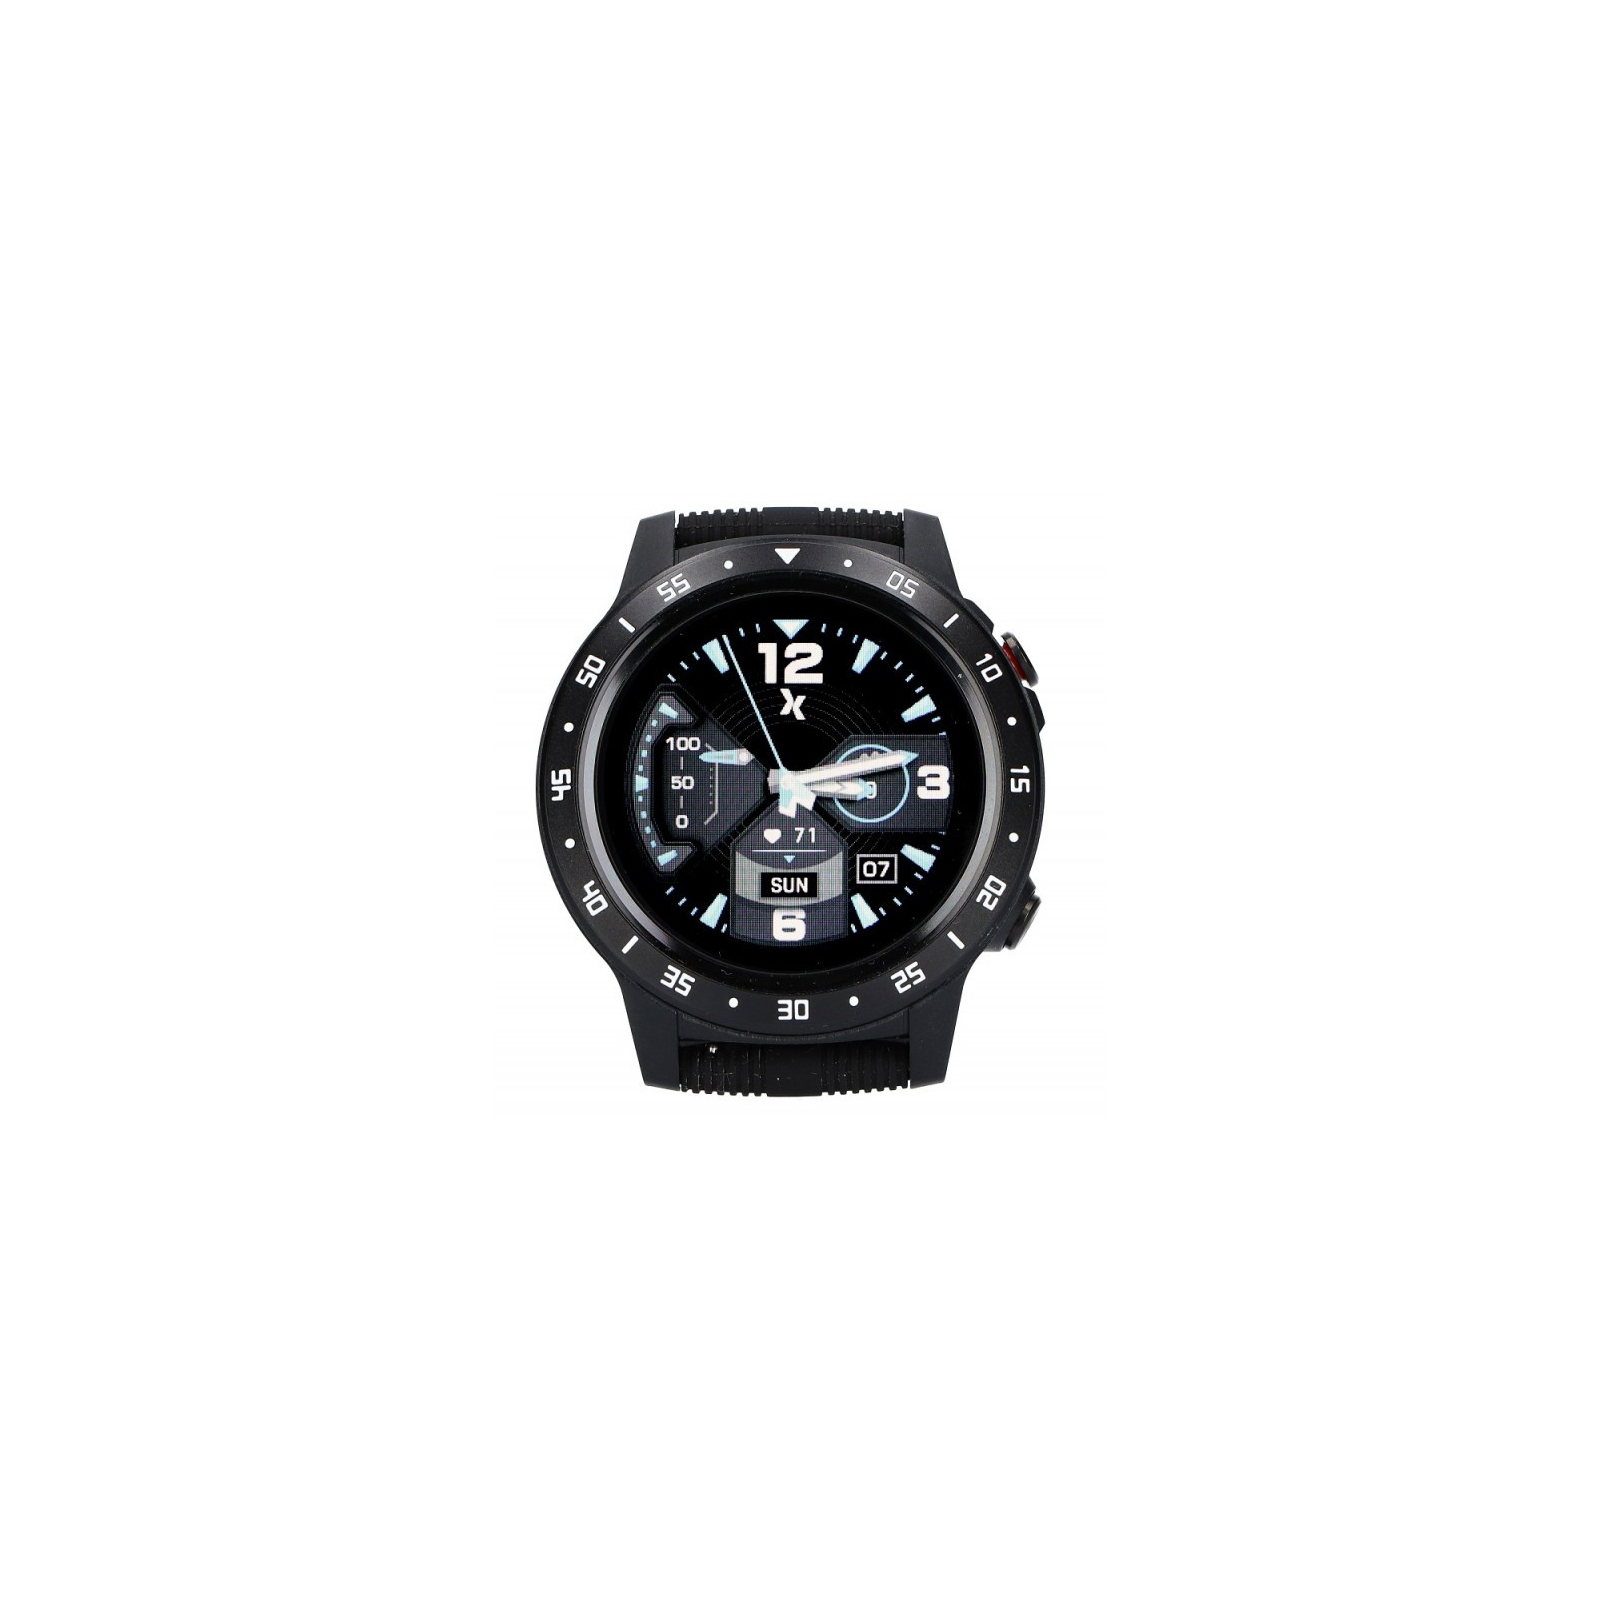 Смарт-часы Maxcom Fit FW37 ARGON Black изображение 2